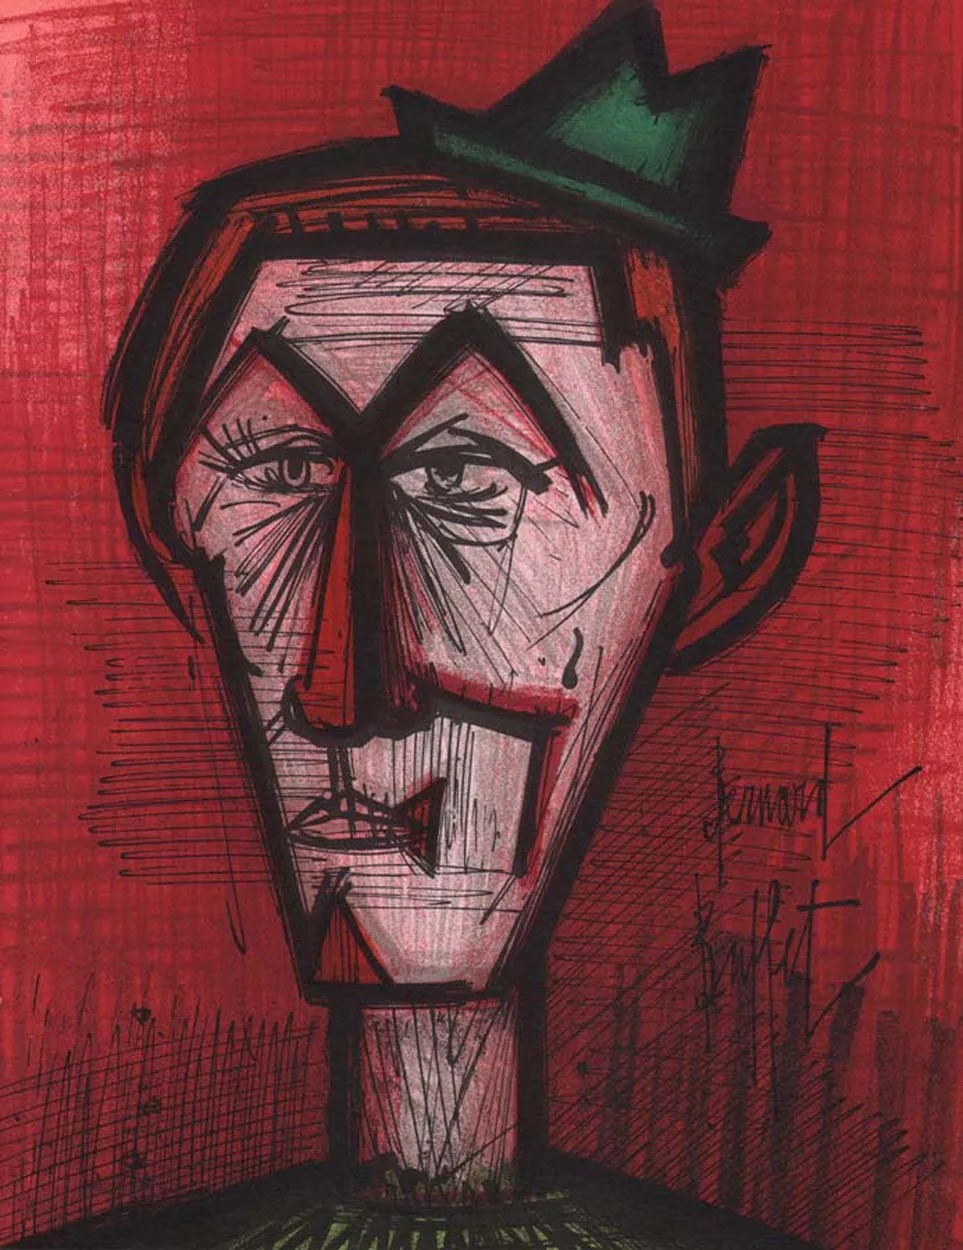 Bernard Buffet, The clown on red background, Original Lithograph, Mourlot 1967